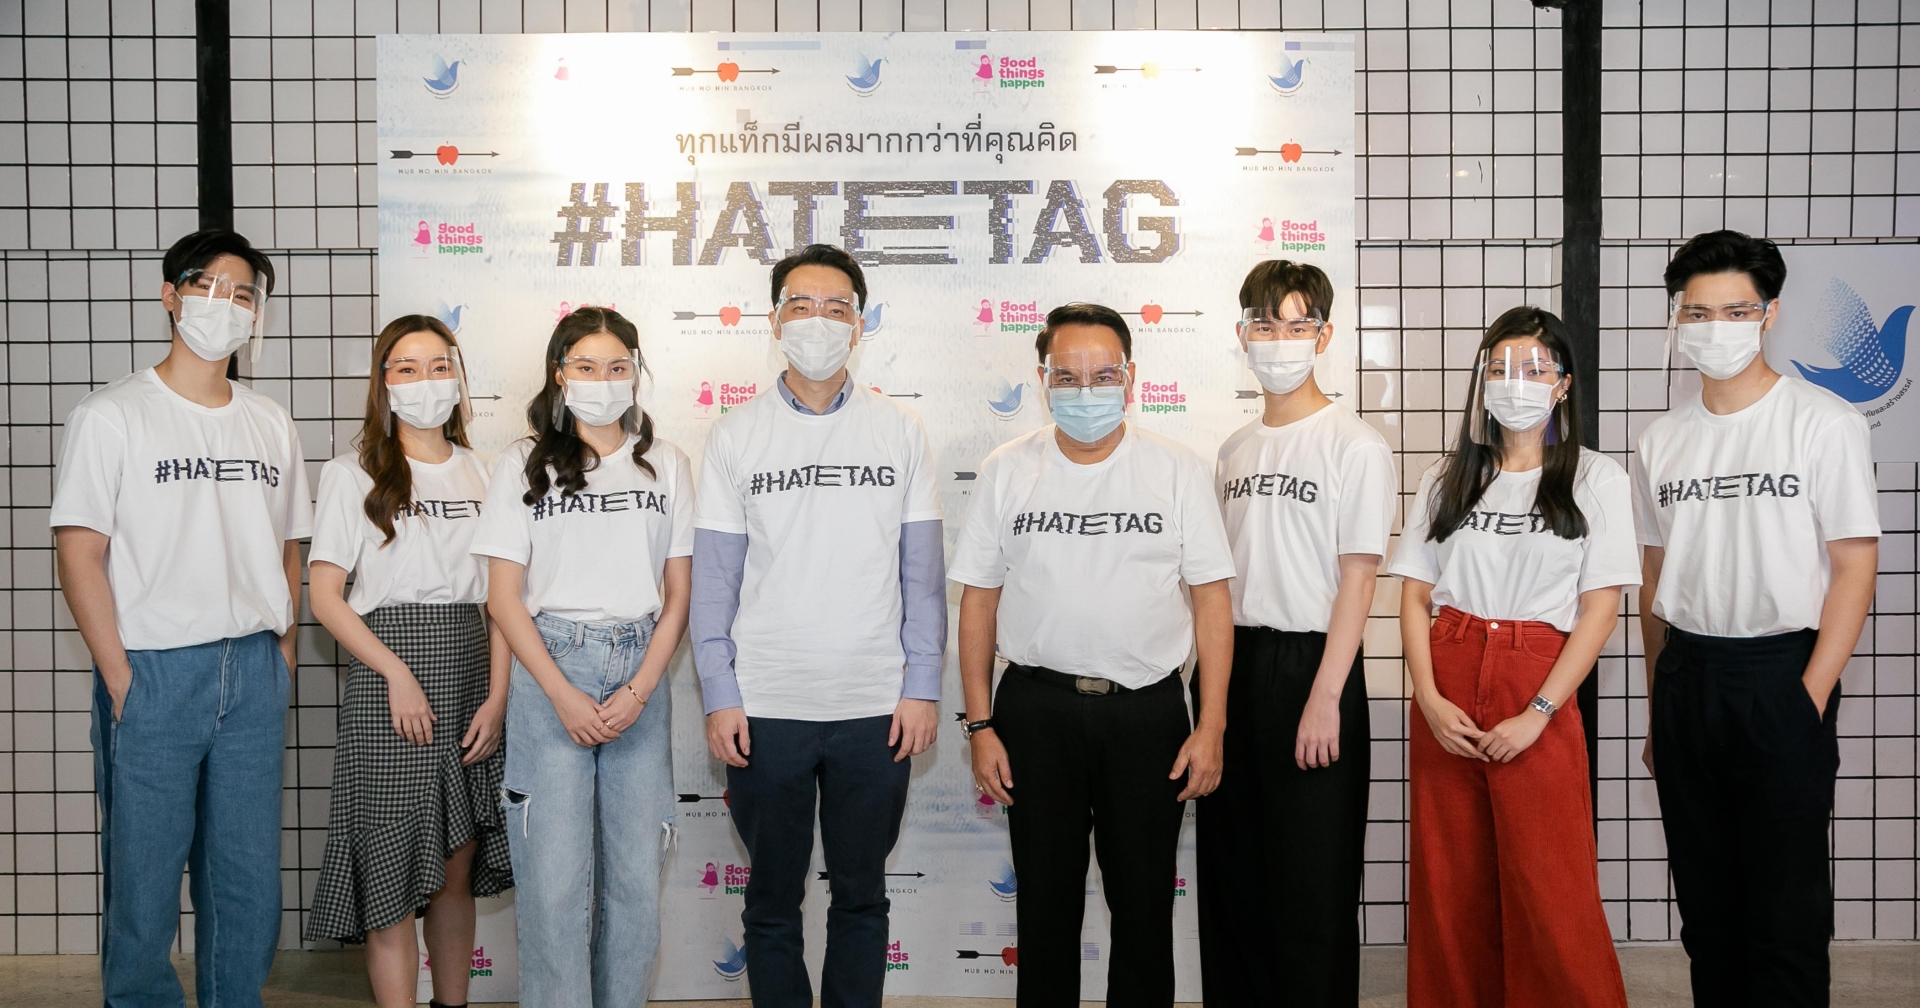 แถลงข่าว โปรเจกต์ ‘HATETAG’ หนังสั้น 10 เรื่องจาก 5 ผู้กำกับ โครงการรณรงค์ ‘หยุด bully ในโลกออนไลน์’